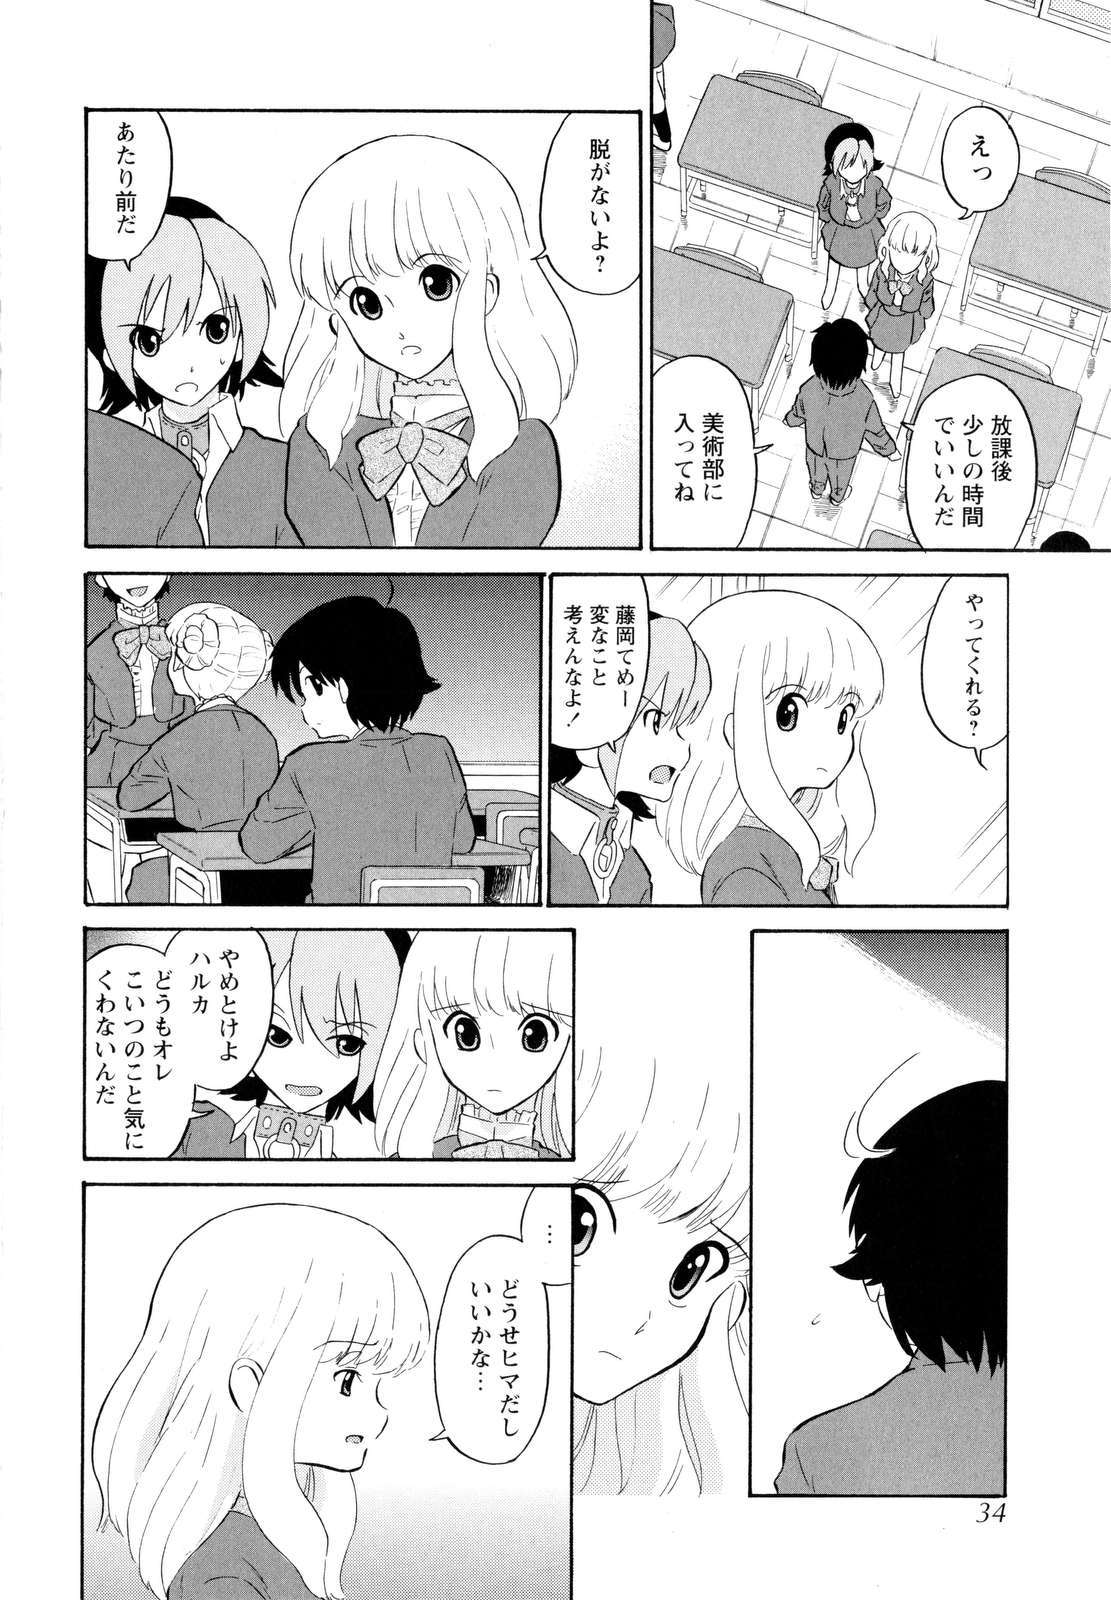 [Dozamura] Haruka 69 Vol.2 page 37 full